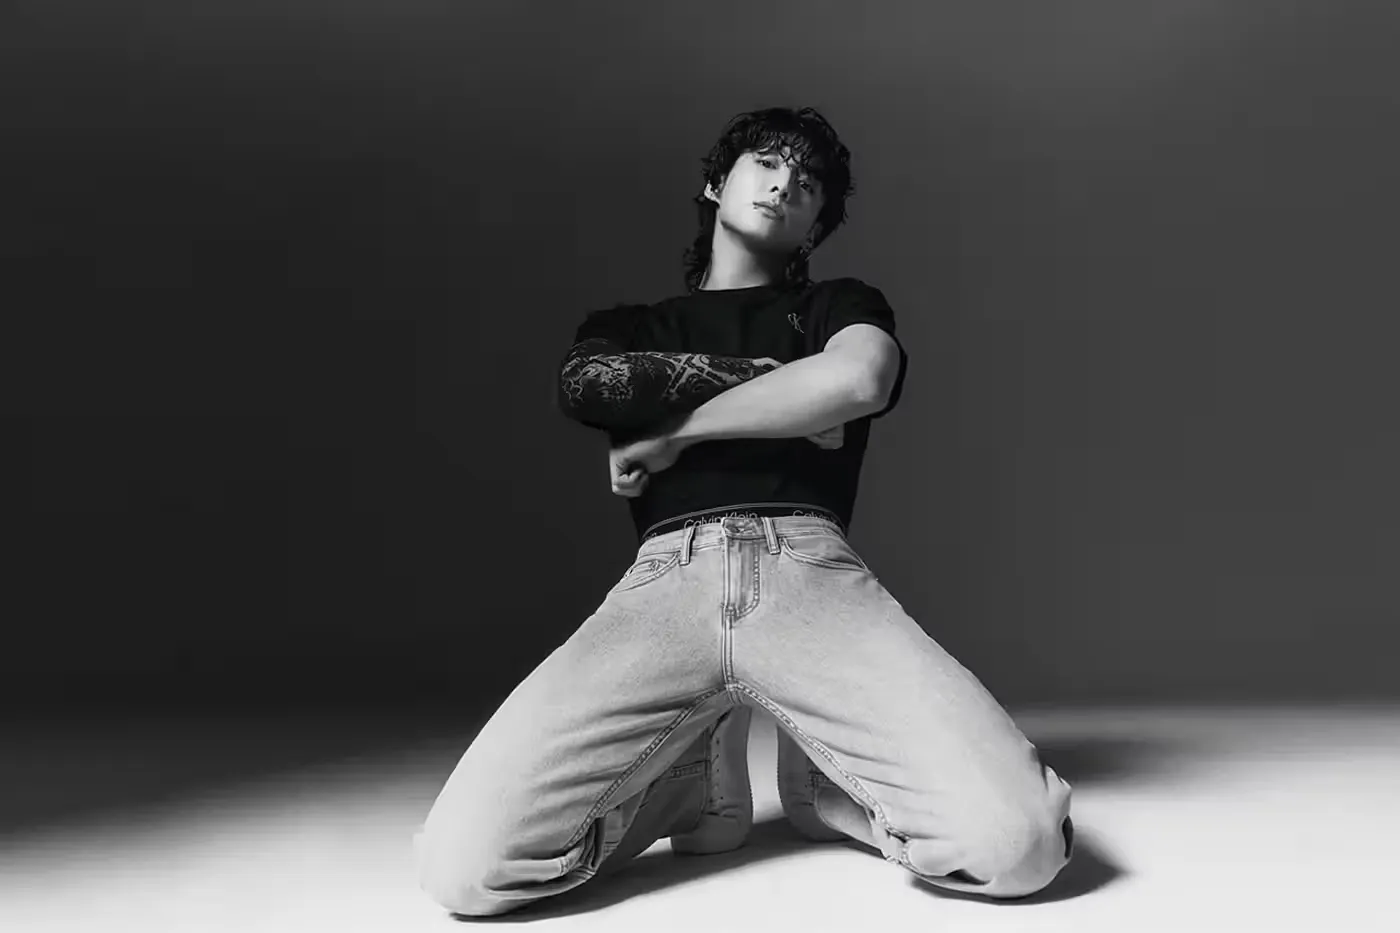 Jung Kook De BTS Nommé Ambassadeur Mondial De Jeans Et De Sous